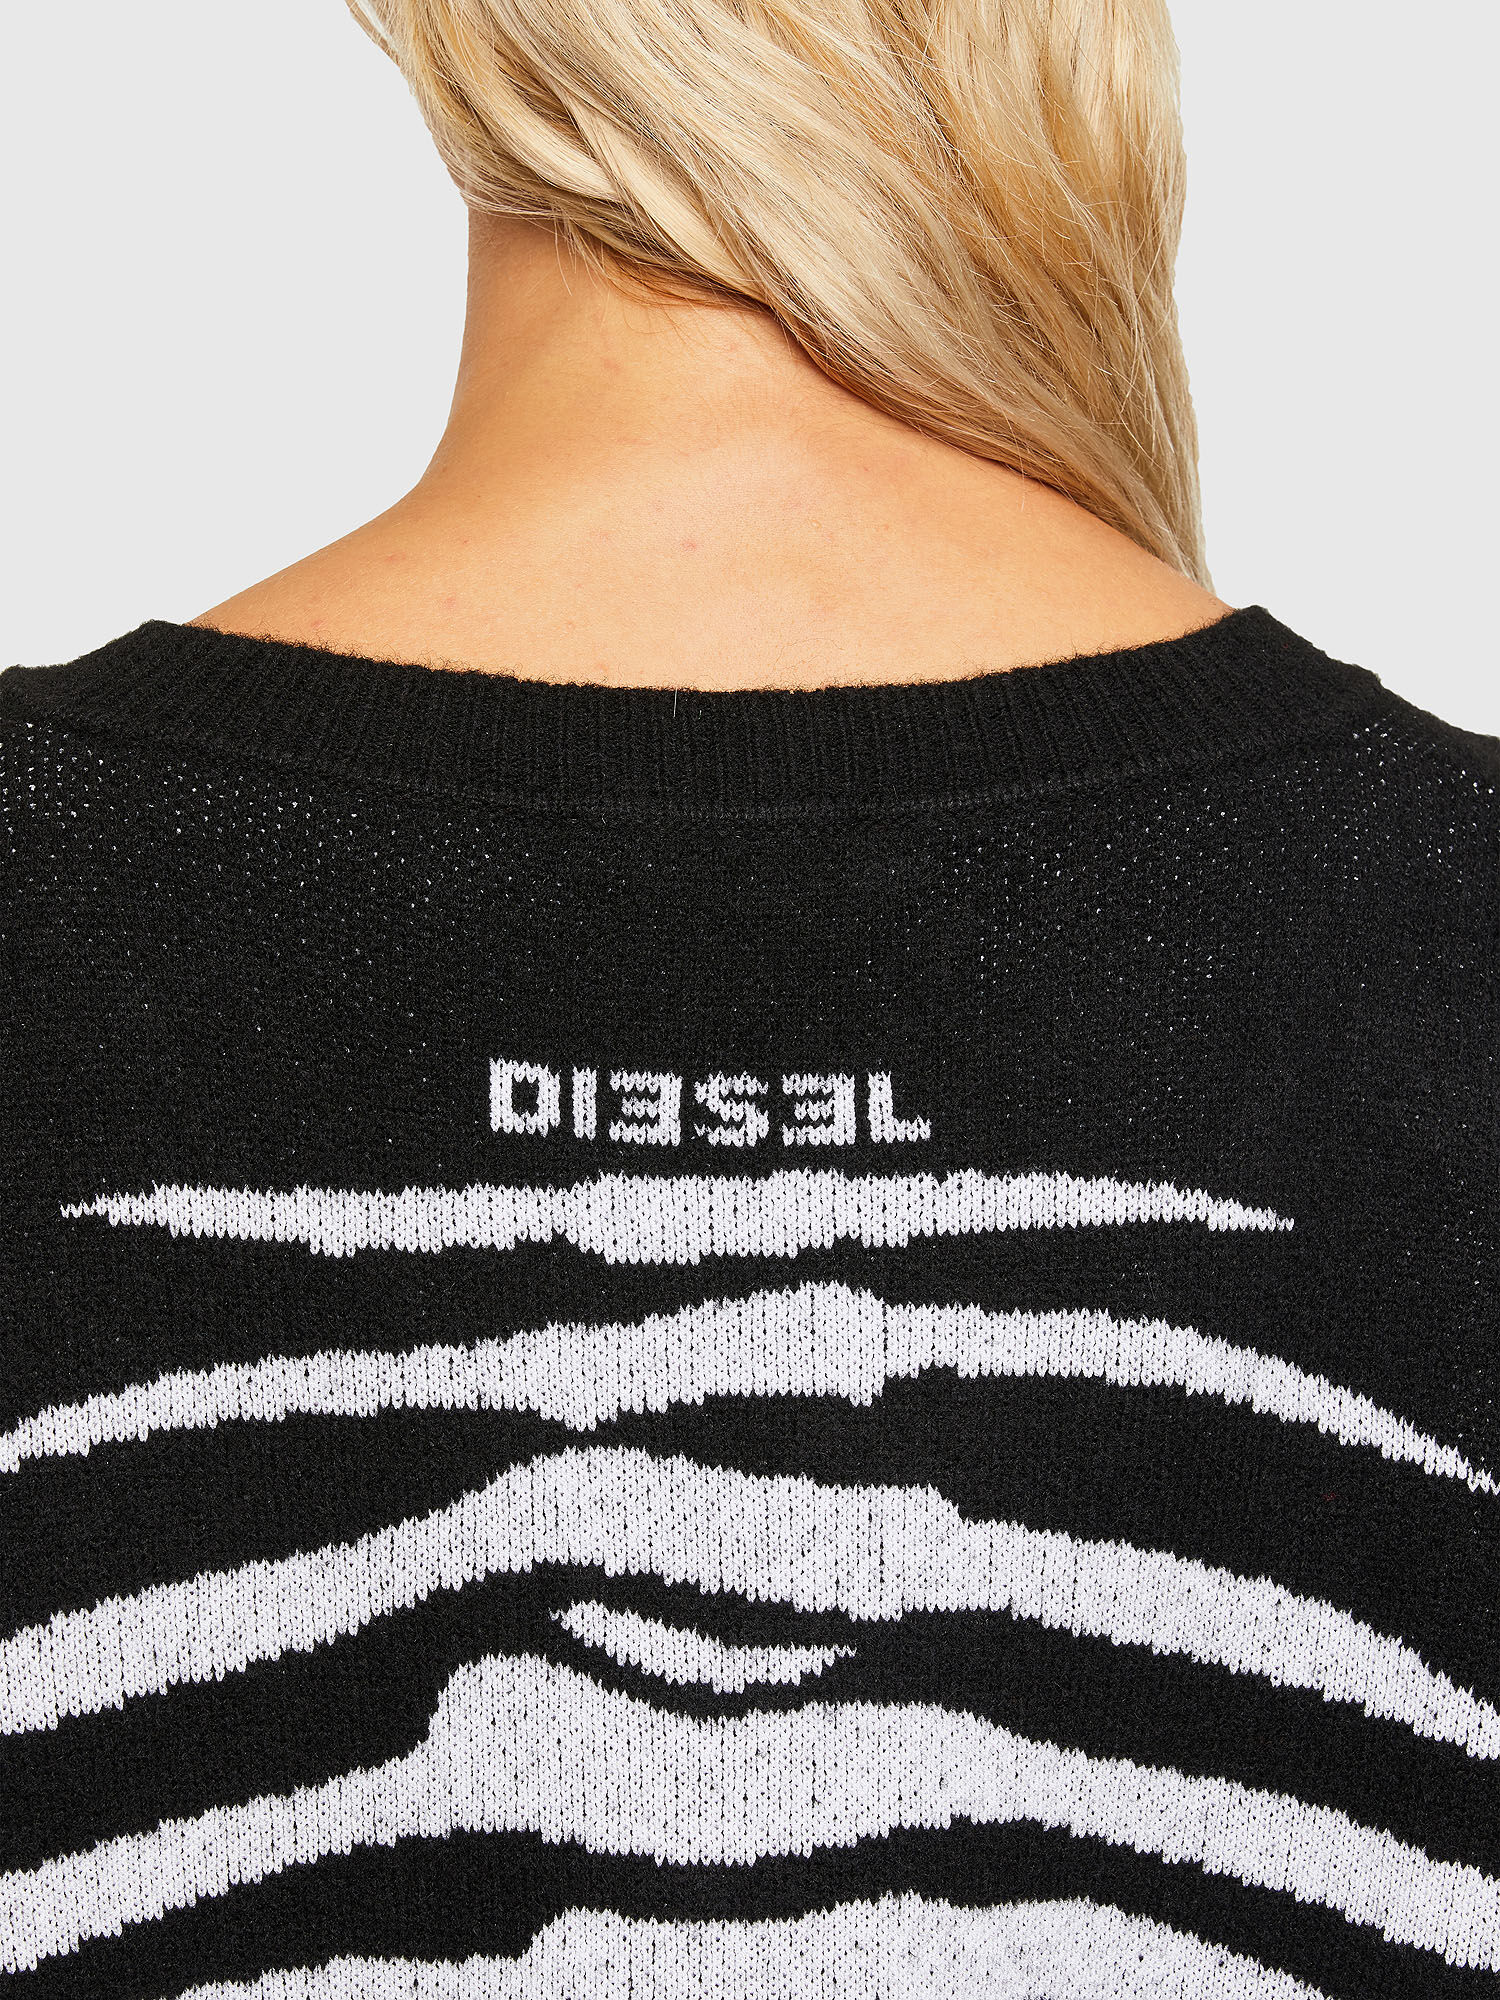 Diesel - M-CRYSTAL, Black - Image 4